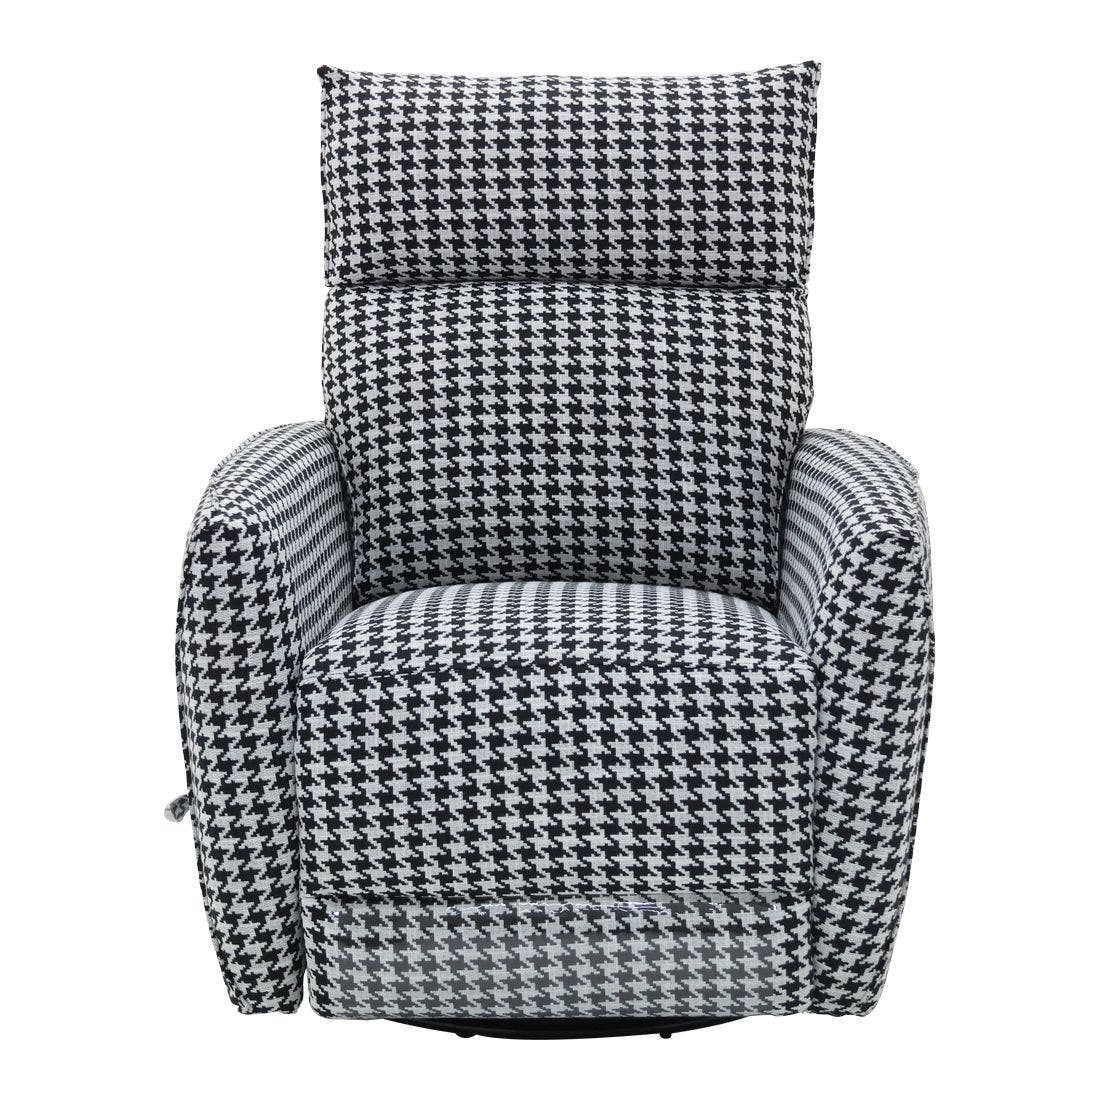 เก้าอี้พักผ่อนผ้า ขนาด 1 ที่นั่ง รุ่น MASILELA สีขาวดำ6